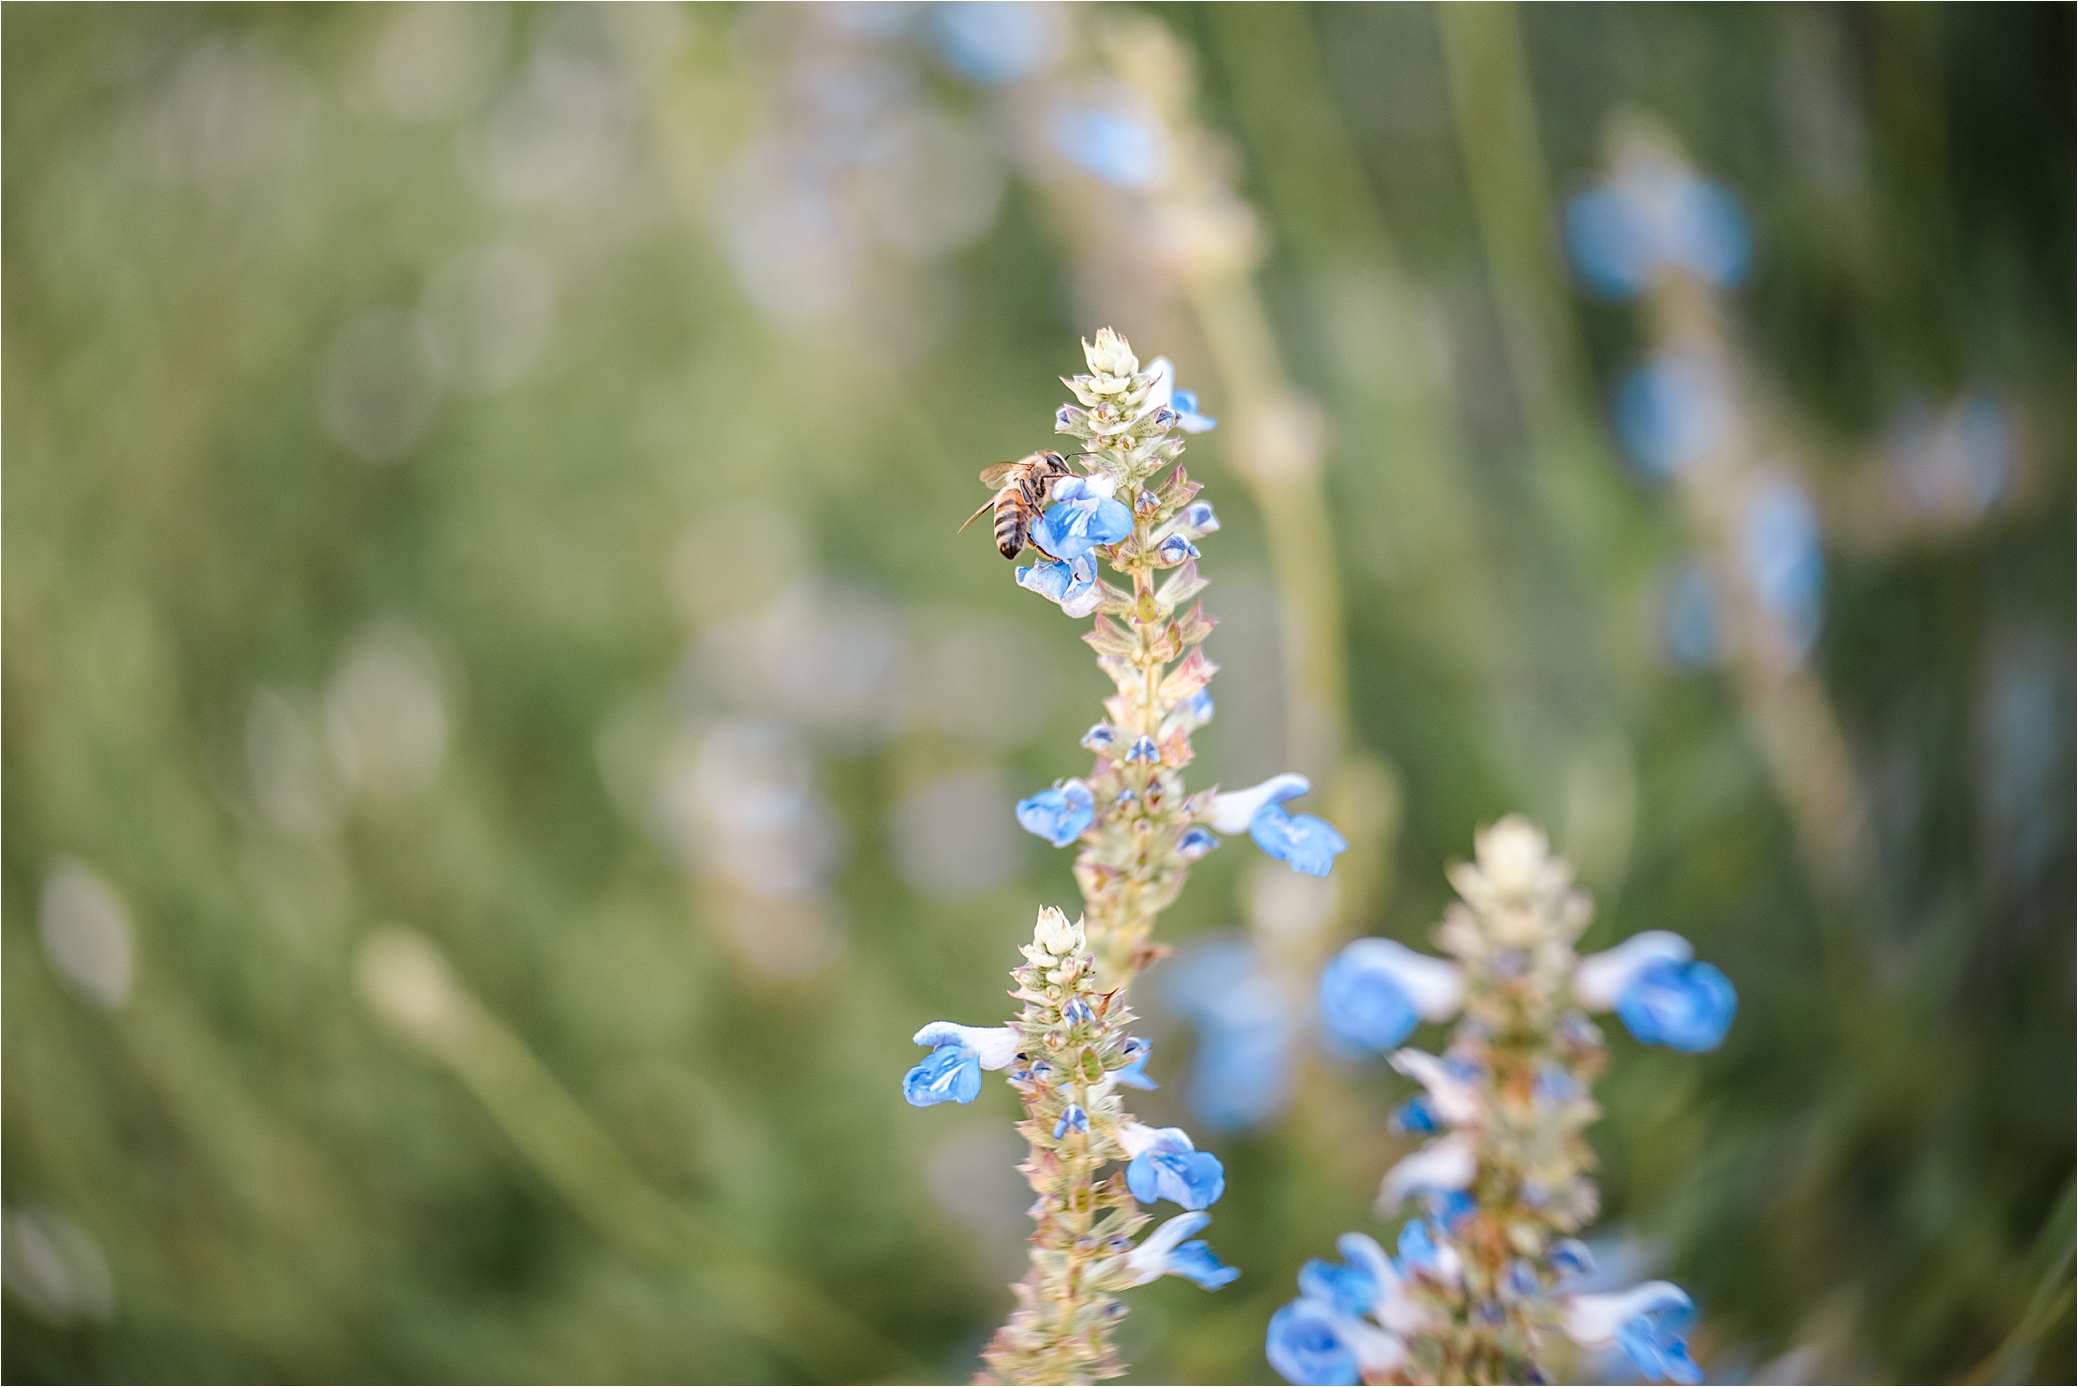 bee on blue garden flowers in summer